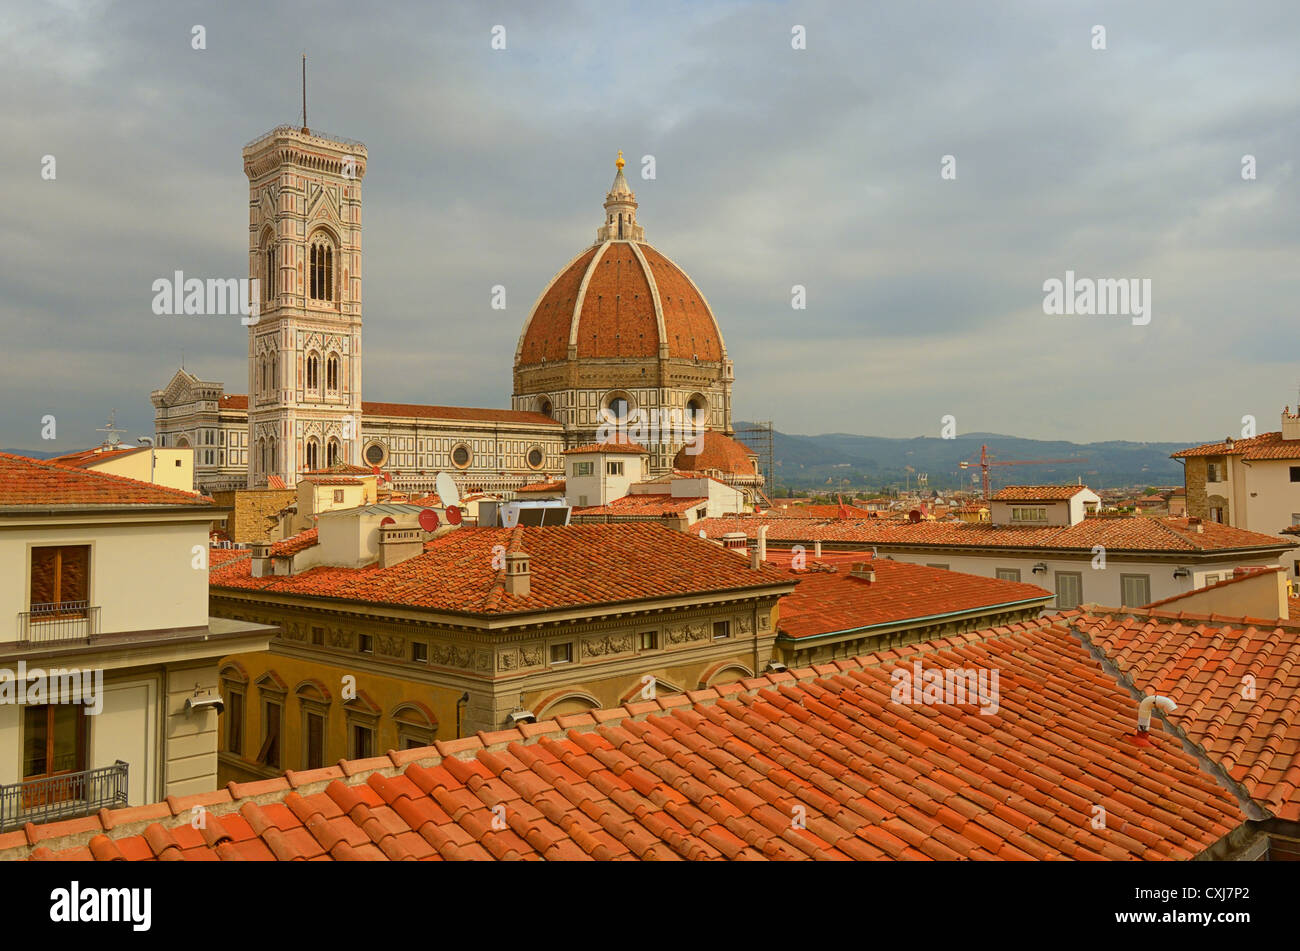 Le Campanile et la coupole de la cathédrale de Florence (Firenze) vue sur les toits de la ville. Banque D'Images